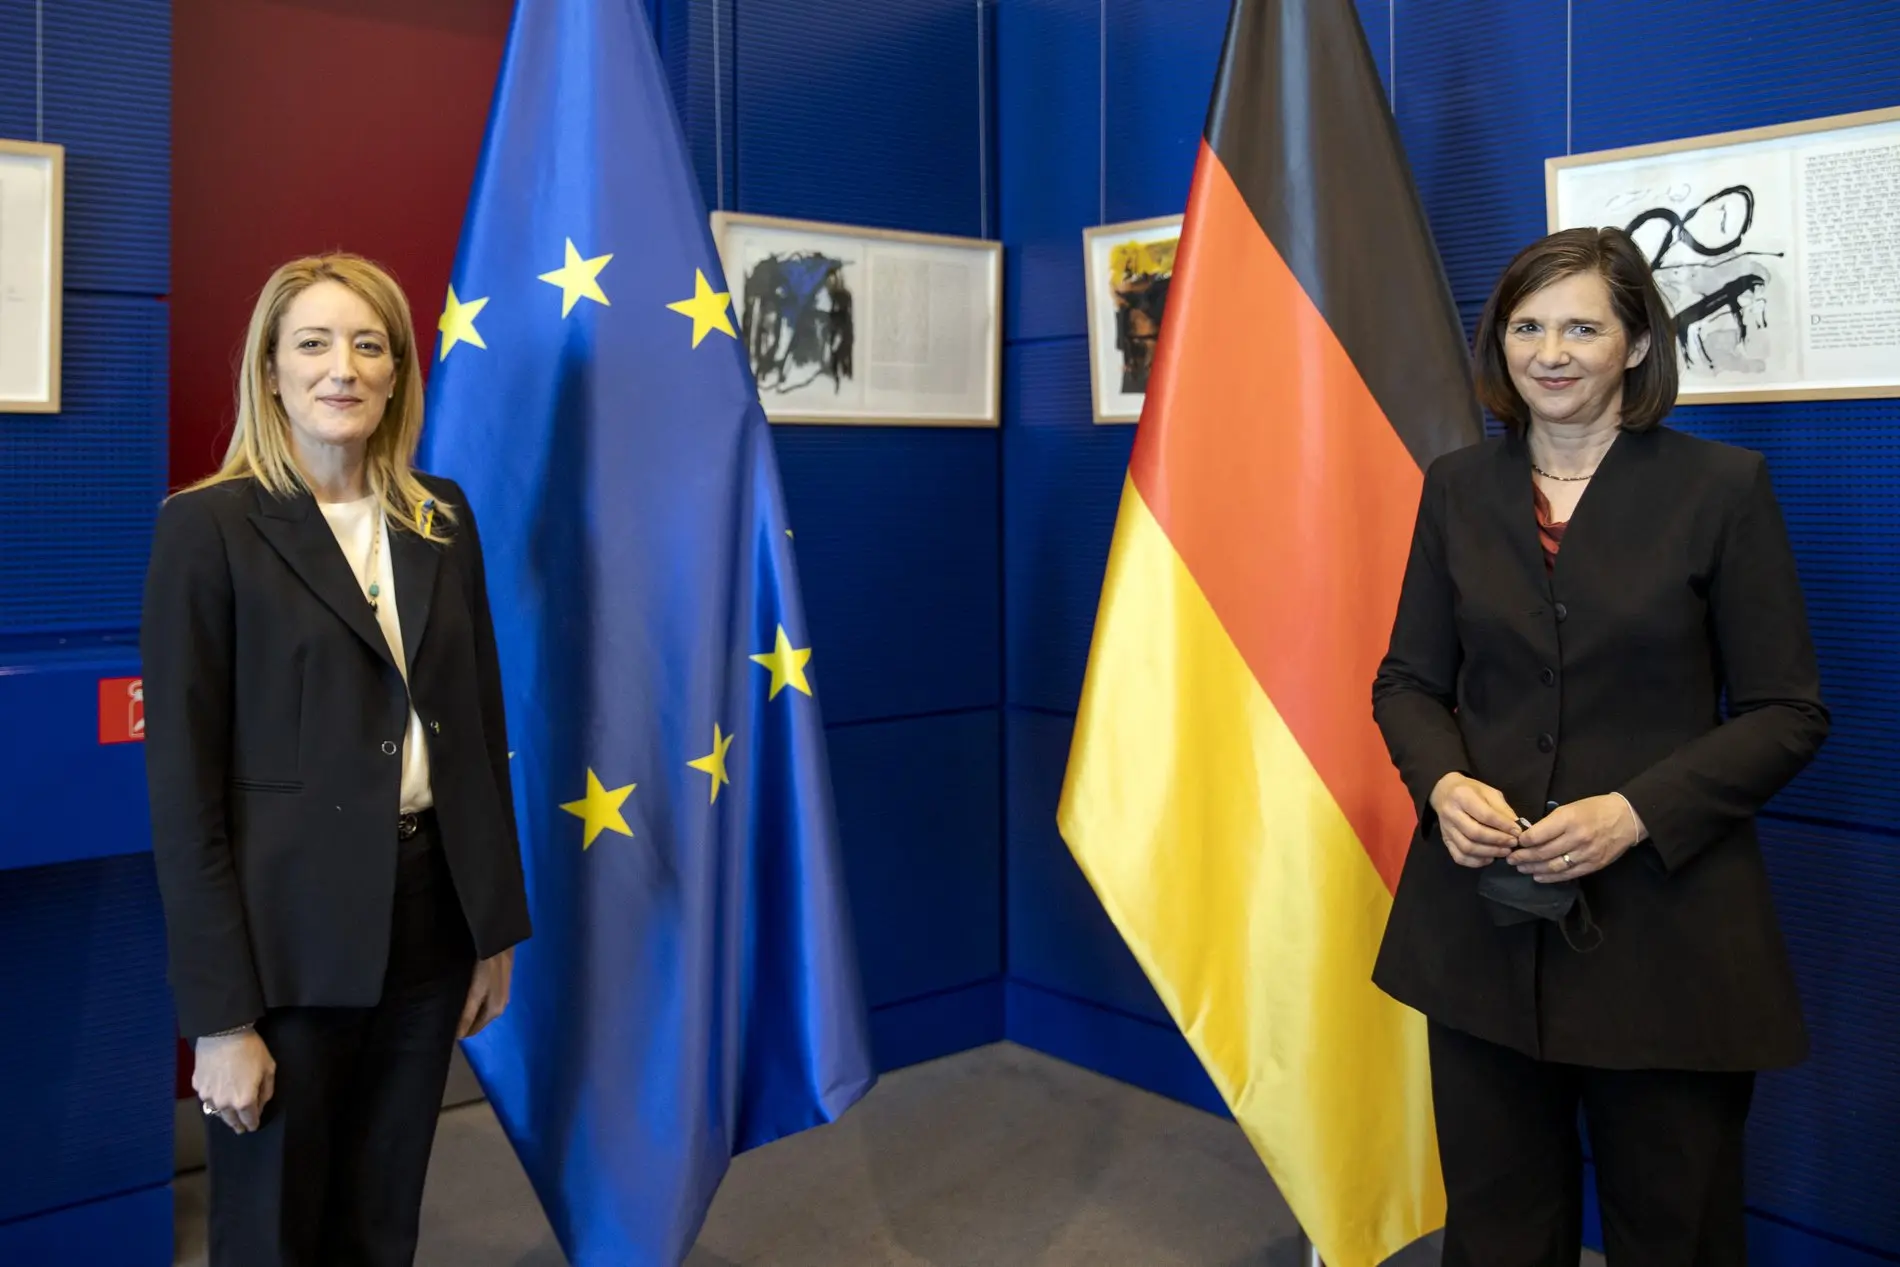 Roberta Metsola und Katrin Göring-Eckardt vor der Europaflagge und der Deutschlandflagge